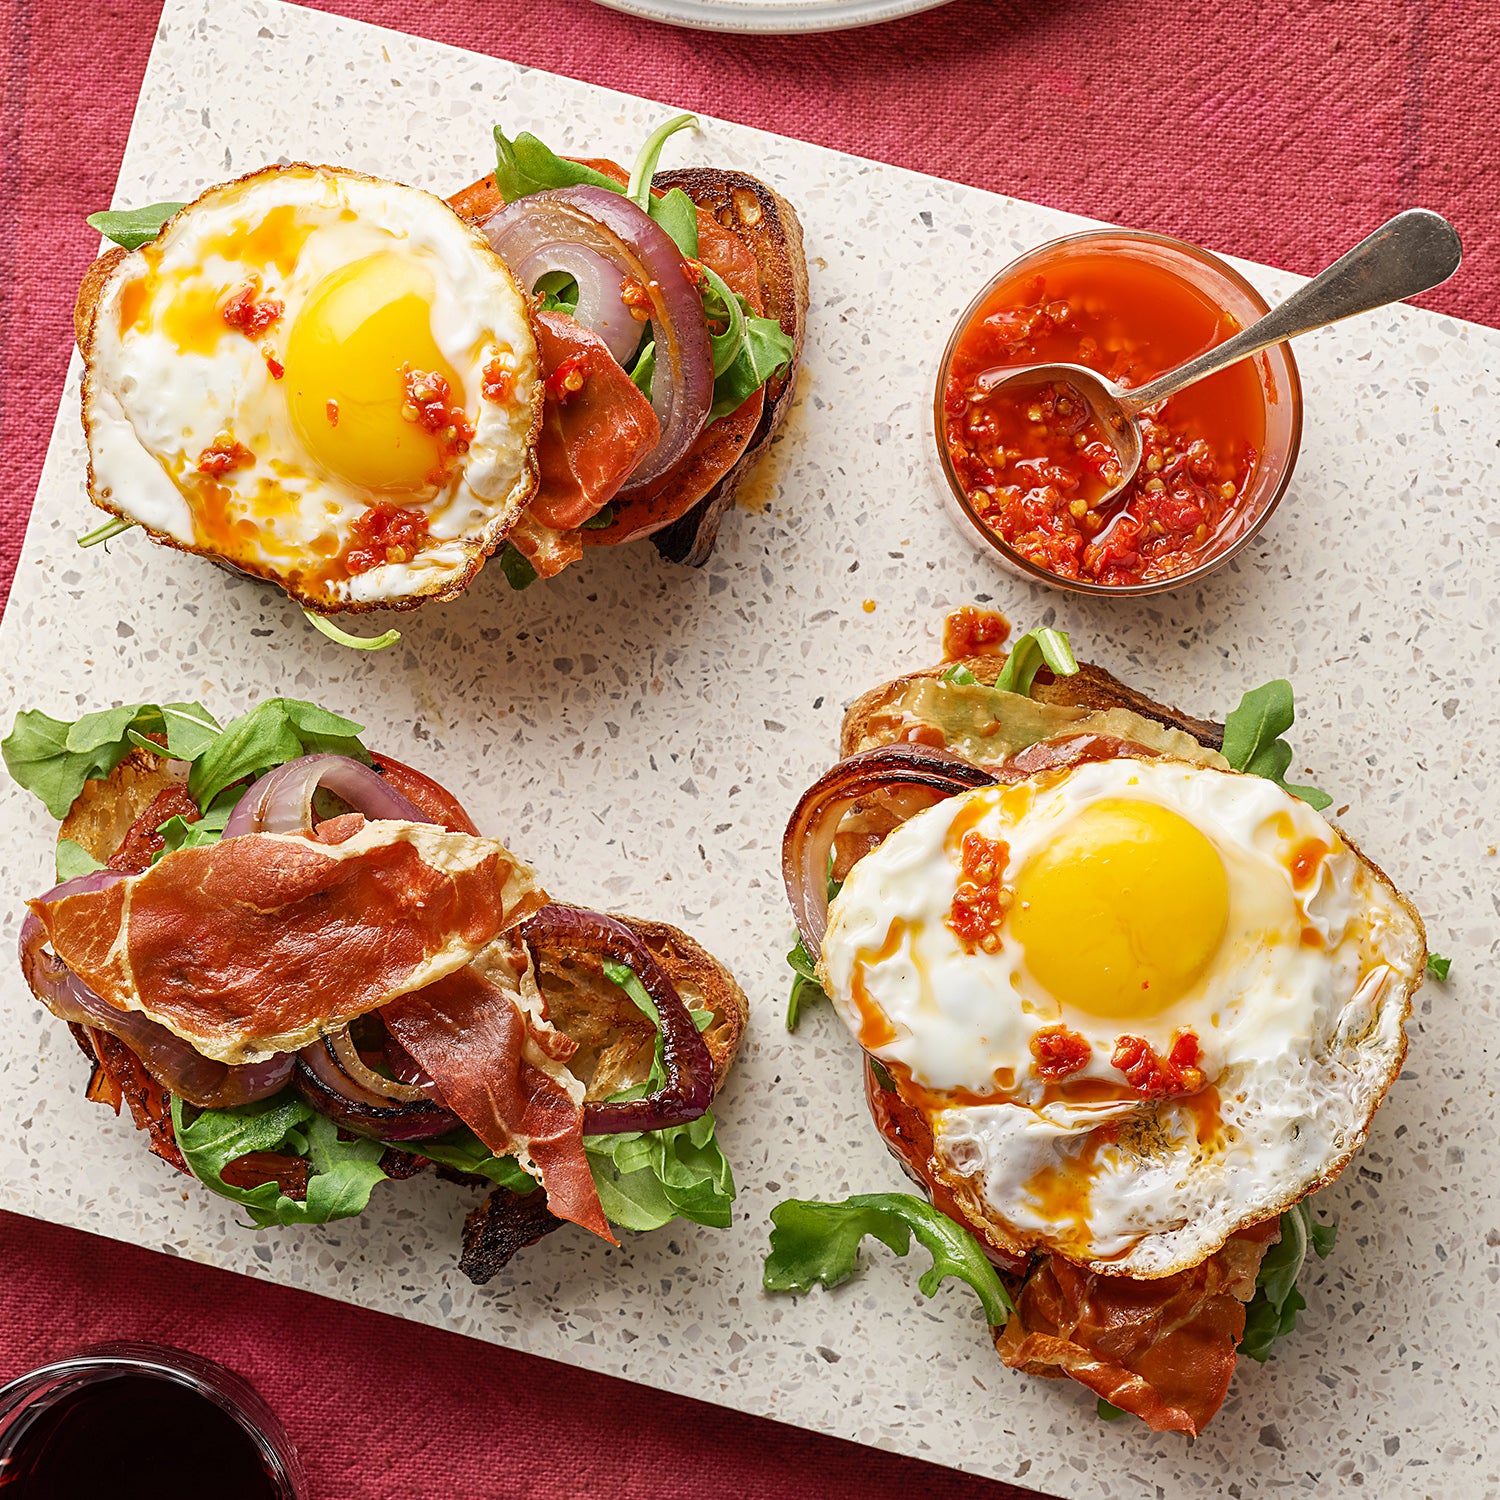 Breakfast Bruschetta: Charred Bread with Grilled Tomatoes, Crispy Prosciutto & Eggs